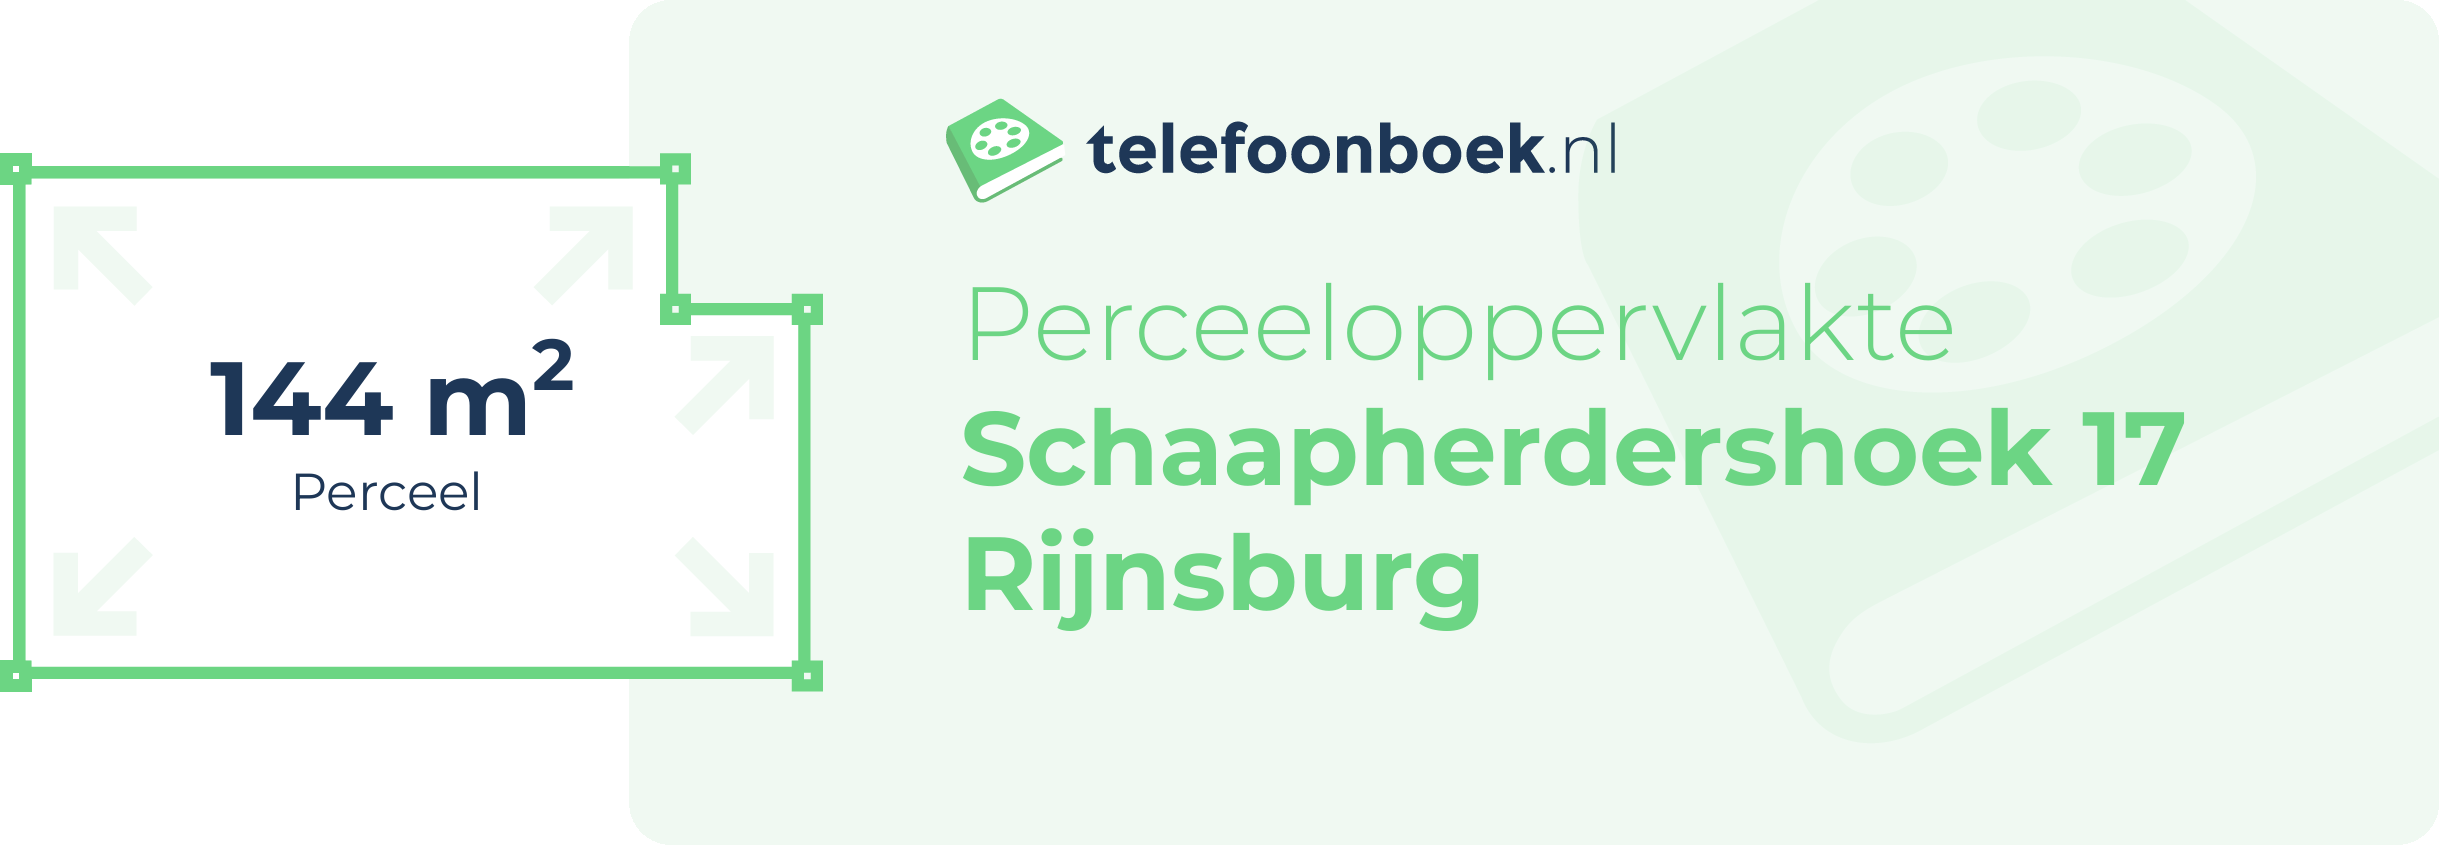 Perceeloppervlakte Schaapherdershoek 17 Rijnsburg